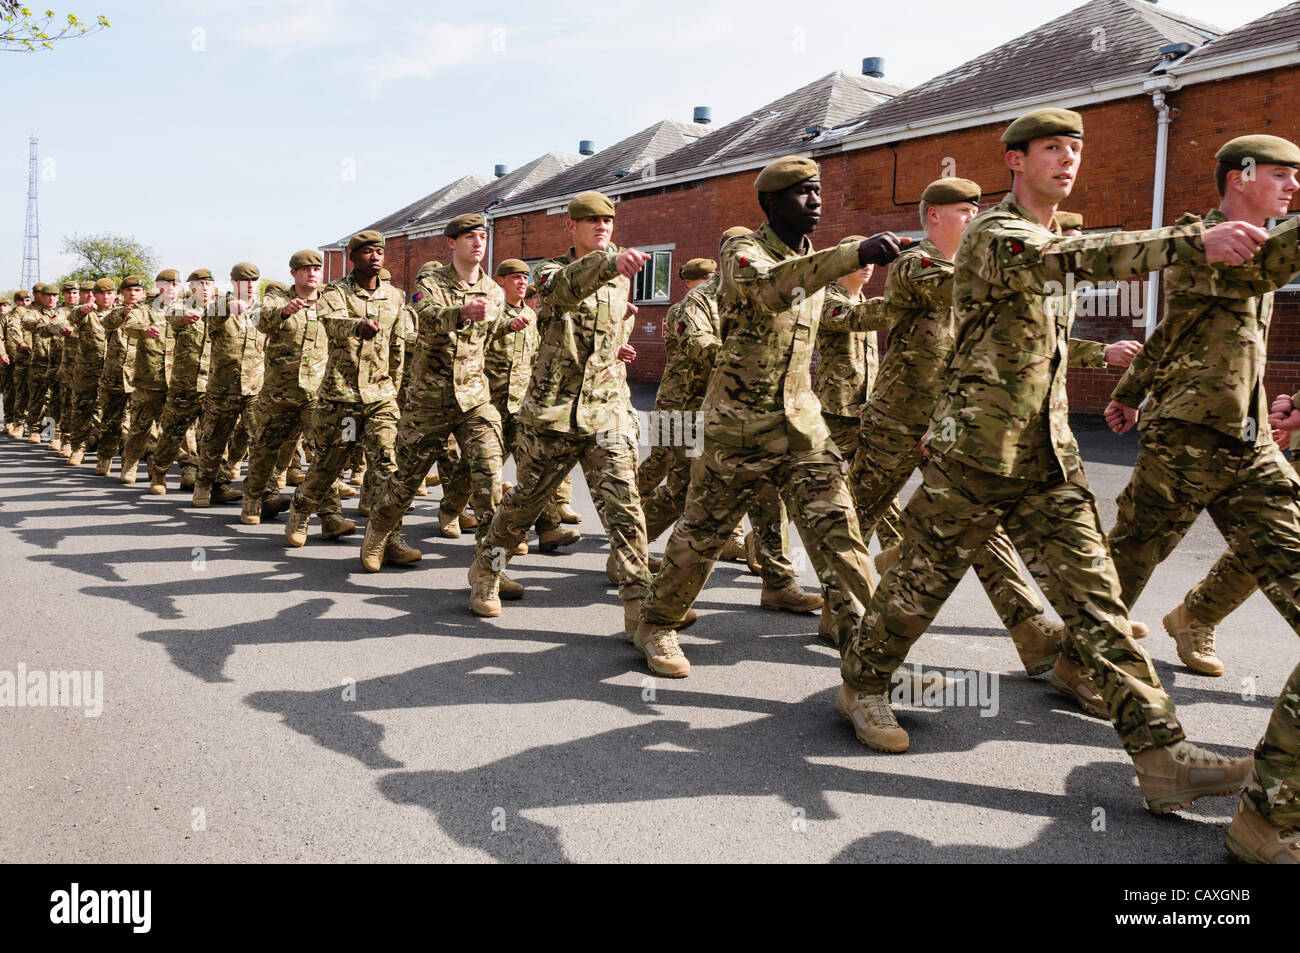 Holywood, 05.03.2012 - Soldaten nach Hause Palace Barracks, County Down, begrüßt, da sie von einem Einsatz in Afghanistan zurückkehren Stockfoto